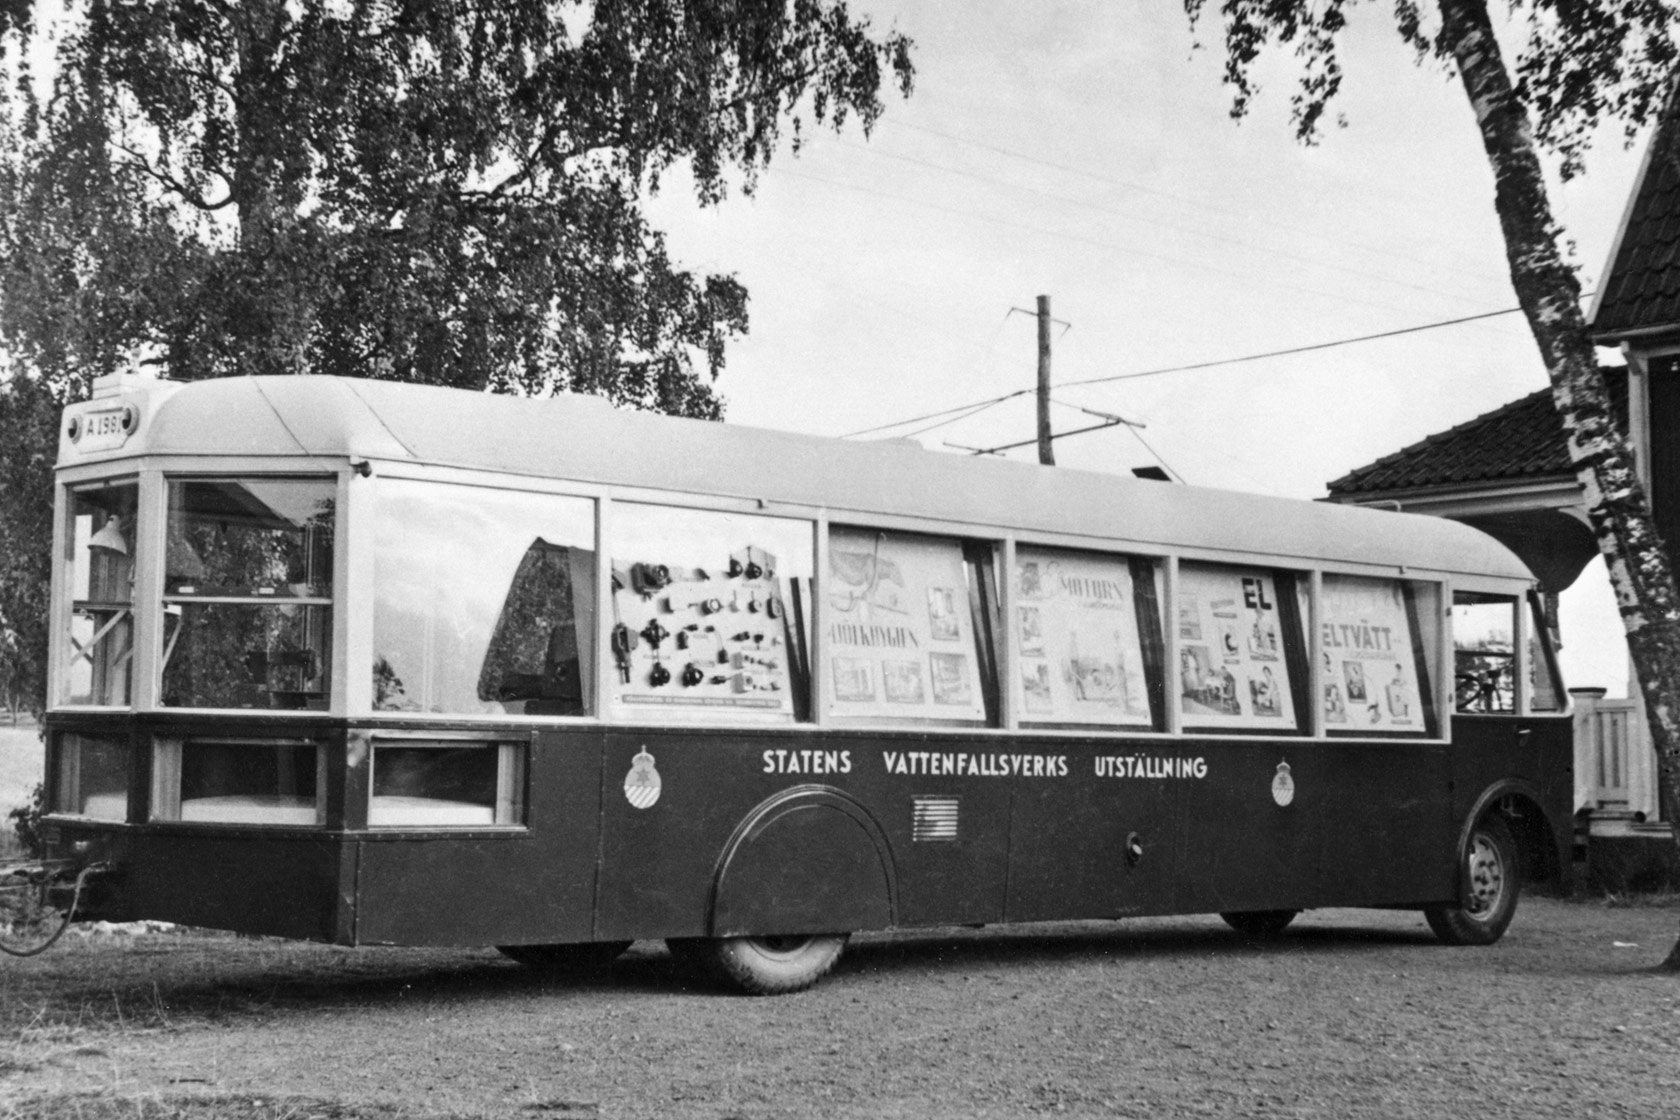 Bus de démonstration, utilisé pour promouvoir l’électricité dans les années 1930 et 1940.